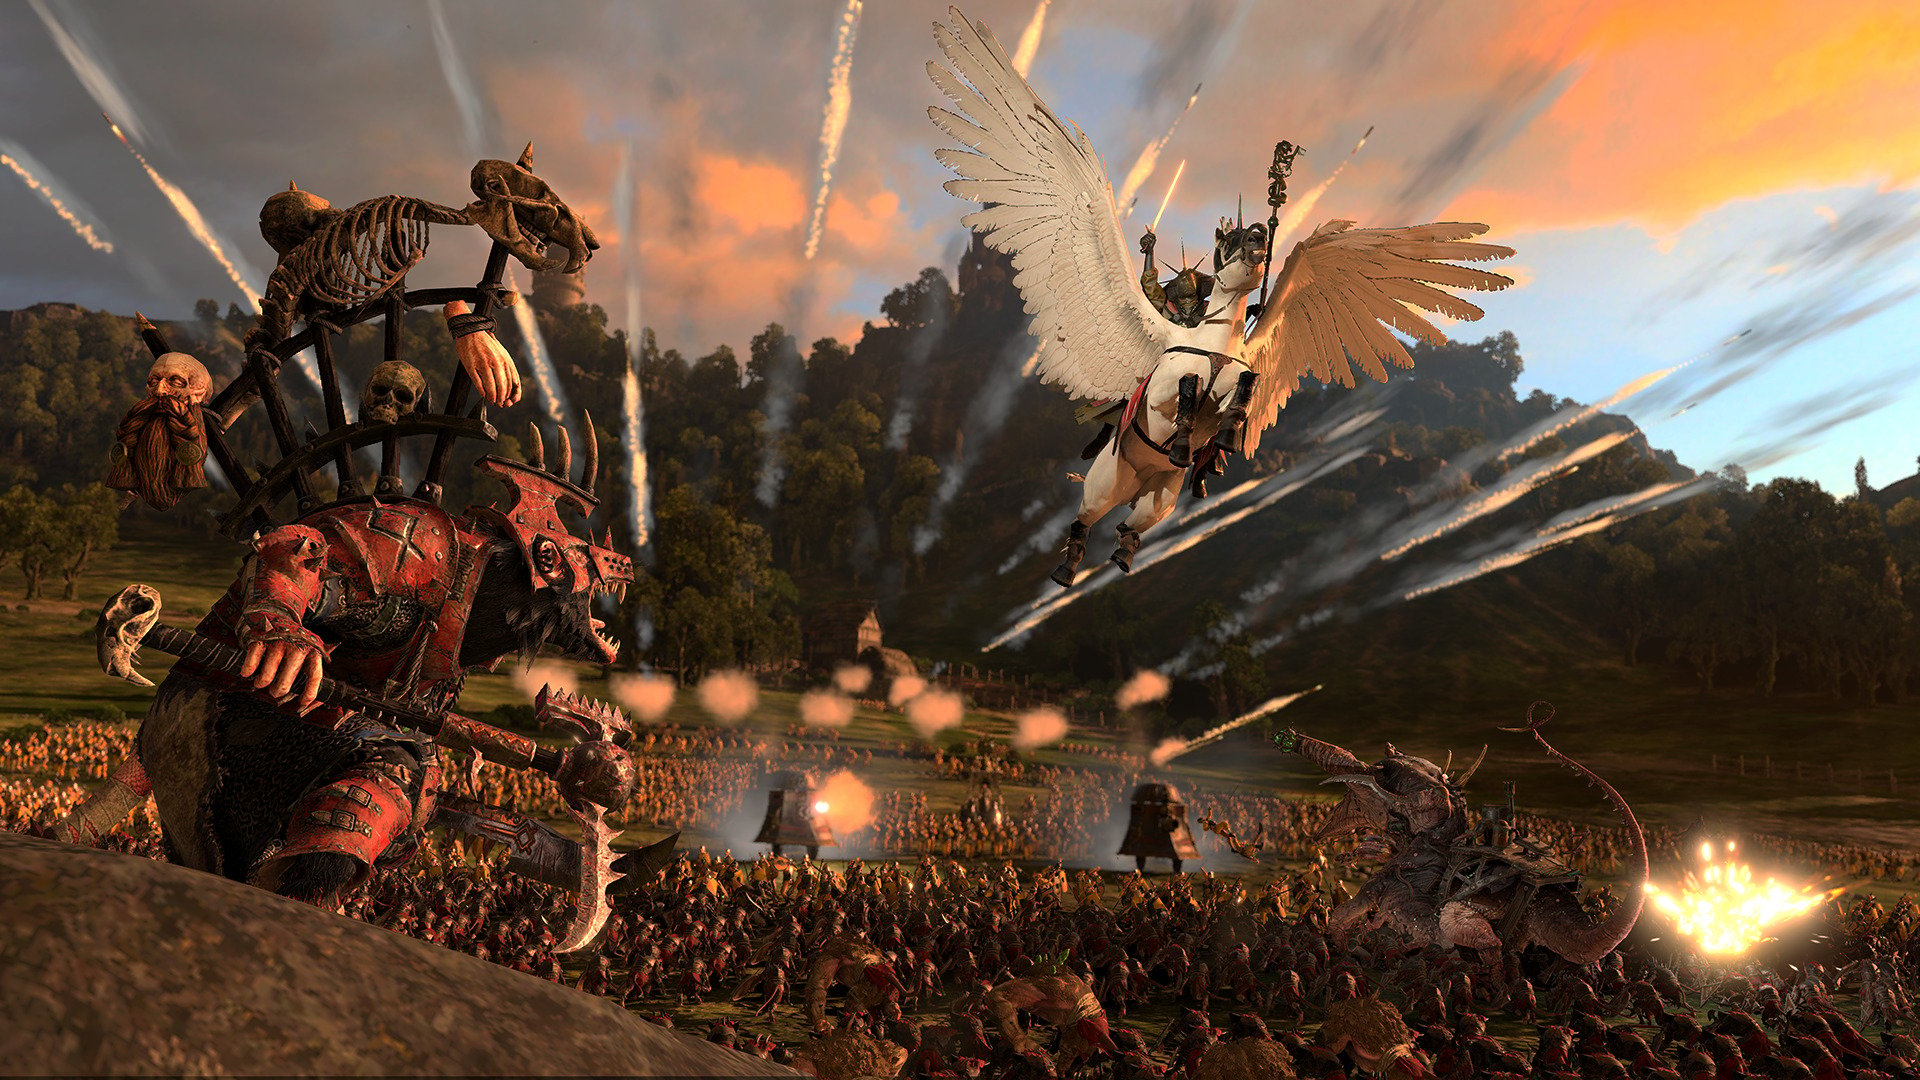 Review: Empire: Total War - A+E Interactive